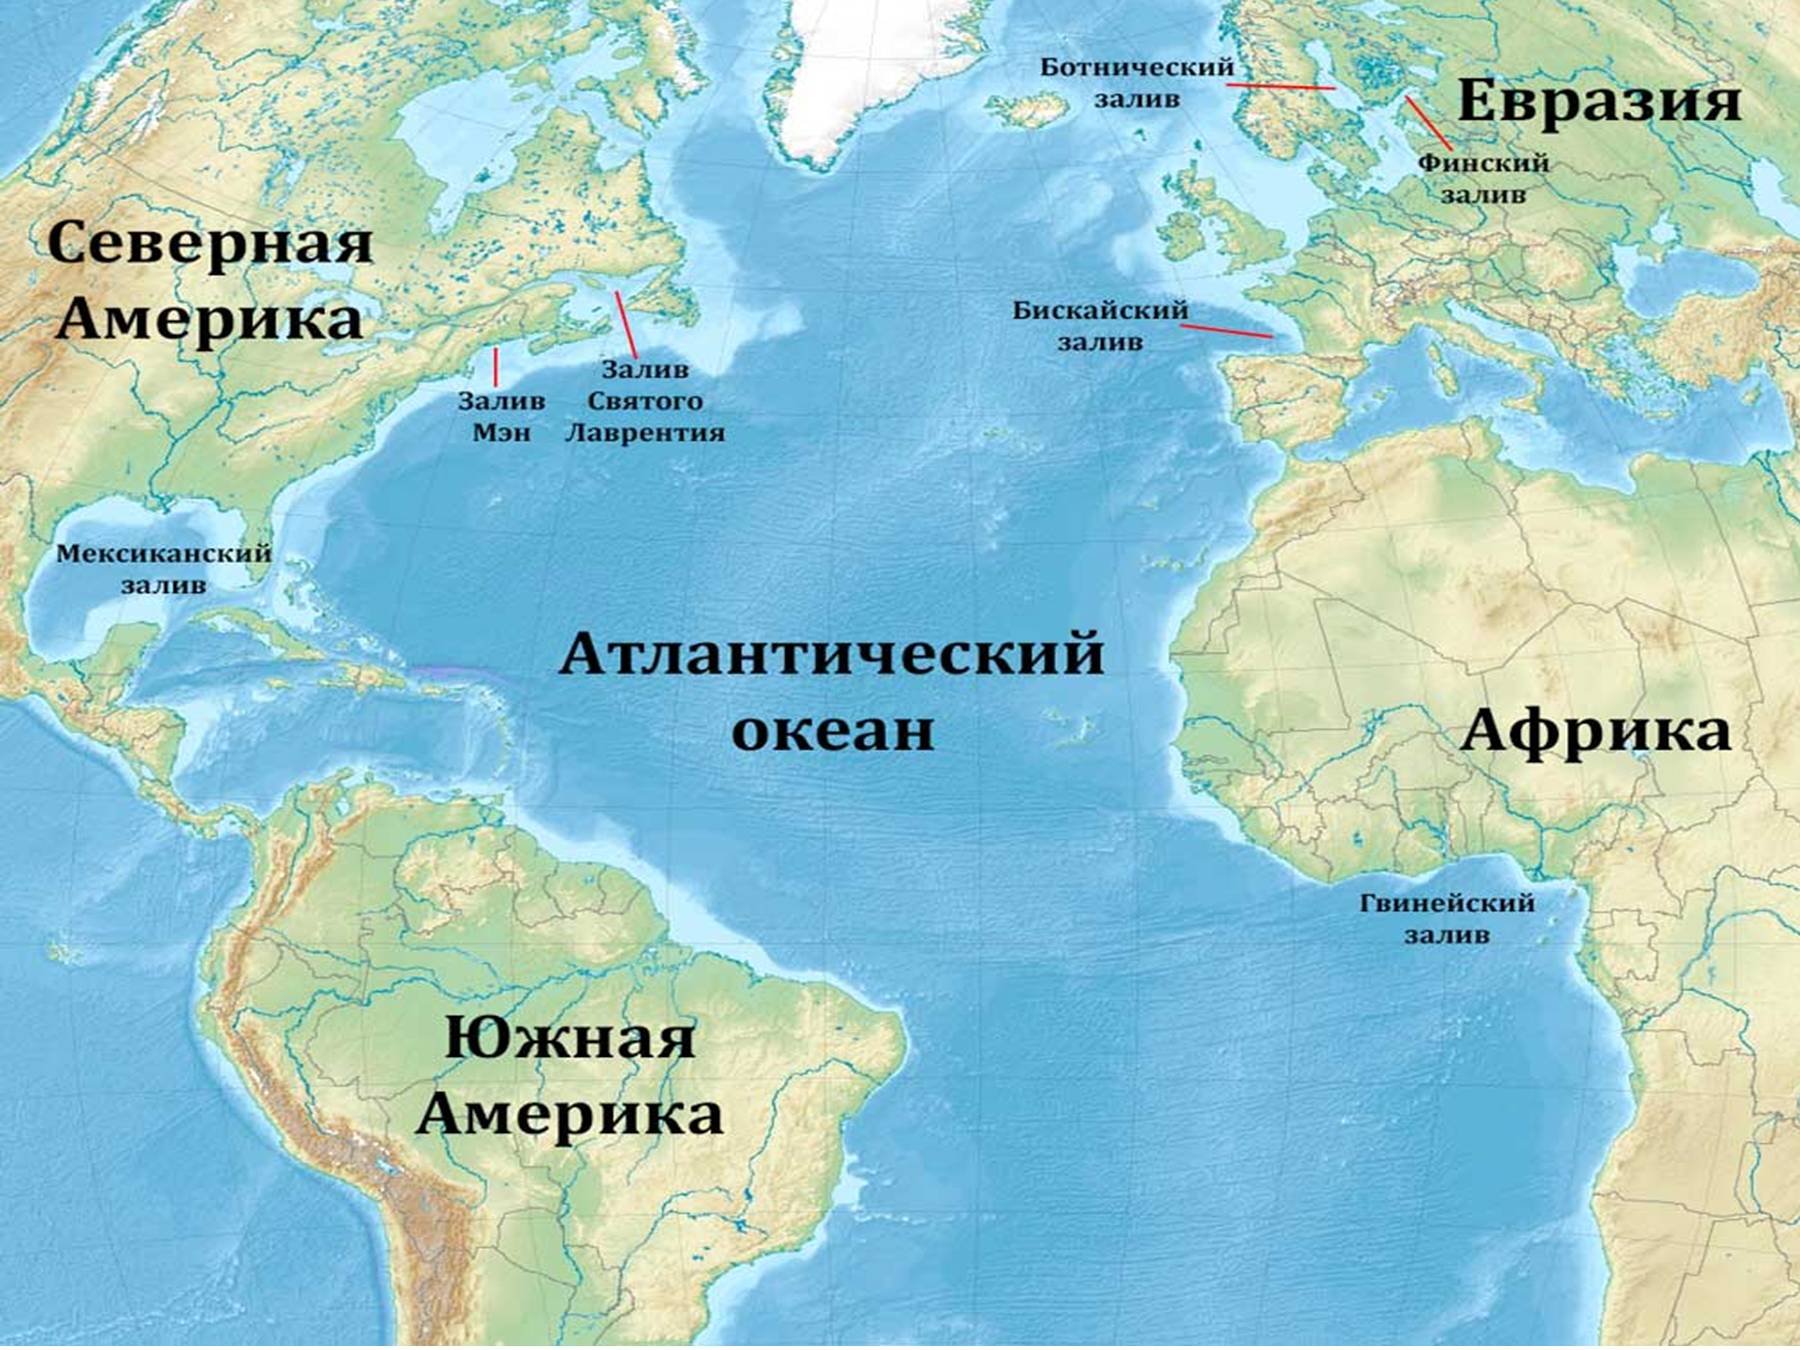 Олбани к какому океану относится. Расположение Атлантического океана на карте. Карта Атлантического океана с морями заливами и проливами. Атлантический океан на карте. Атлантический акеан на карте.